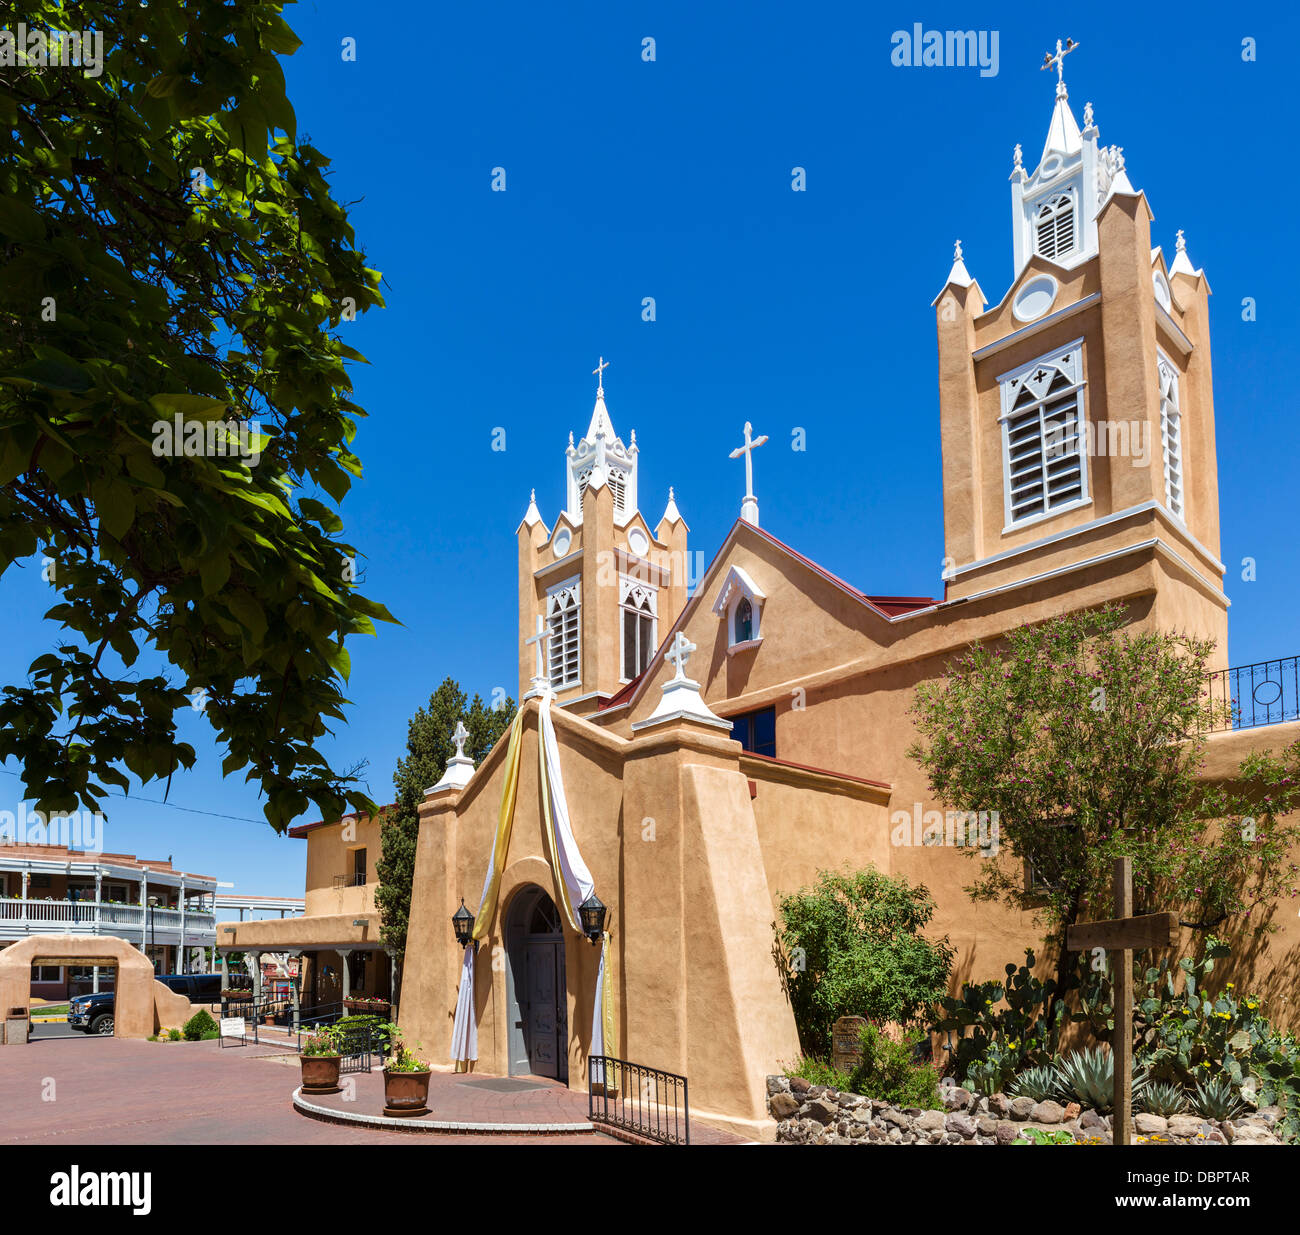 L'église San Felipe de Neri, Old Town Plaza, Old Town, Albuquerque, New Mexico, USA Banque D'Images